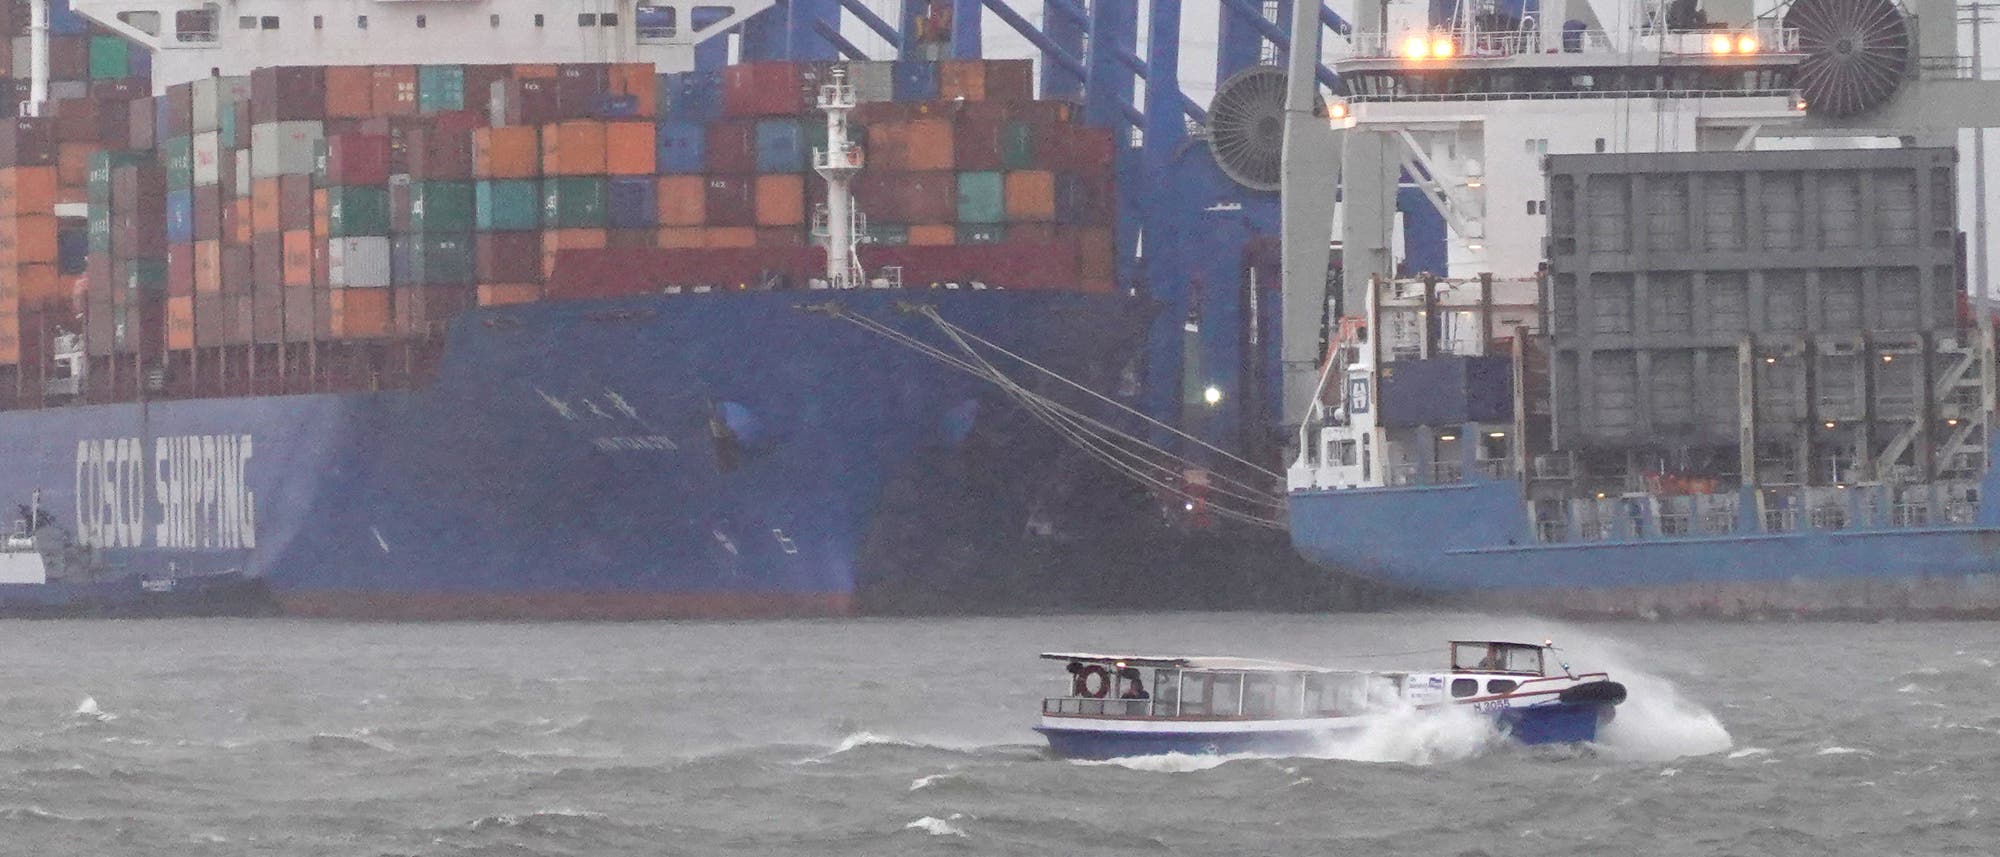 Barkasse im Hamburger Hafen bei Sturm, im Hintergrund Containerschiffe.